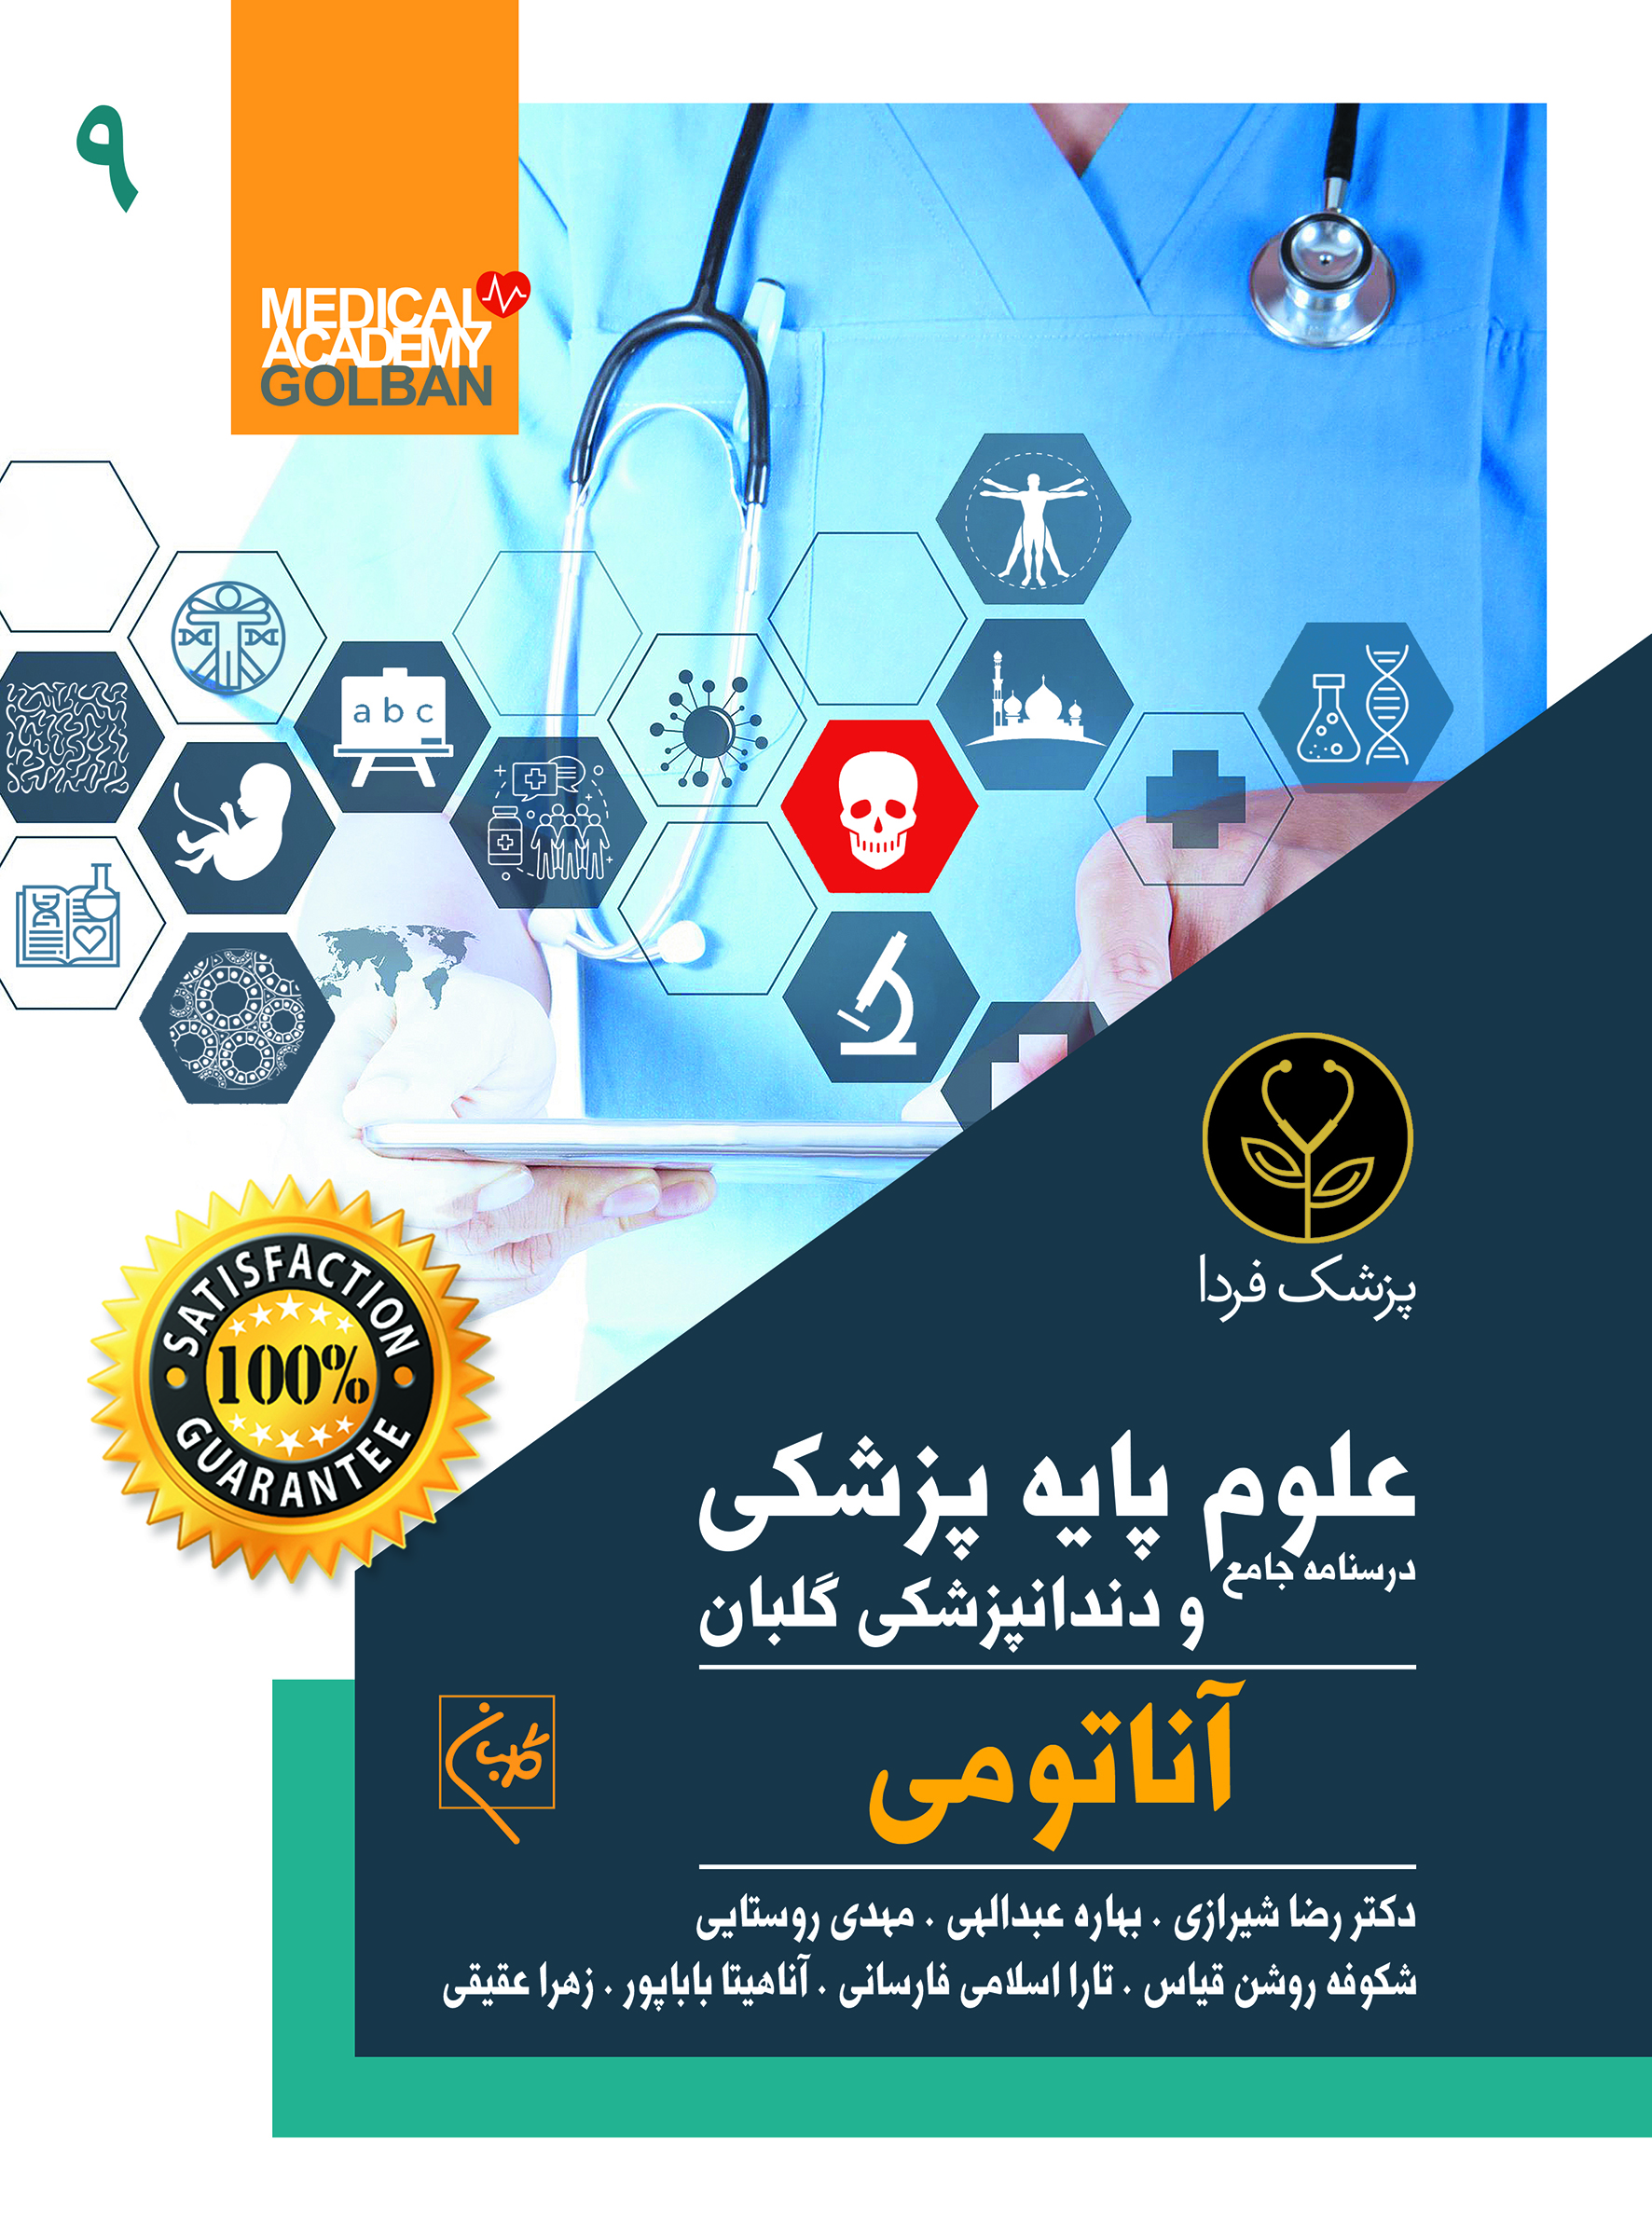 درسنامه جامع علوم پایه پزشکی و دندانپزشکی آناتومی(9)